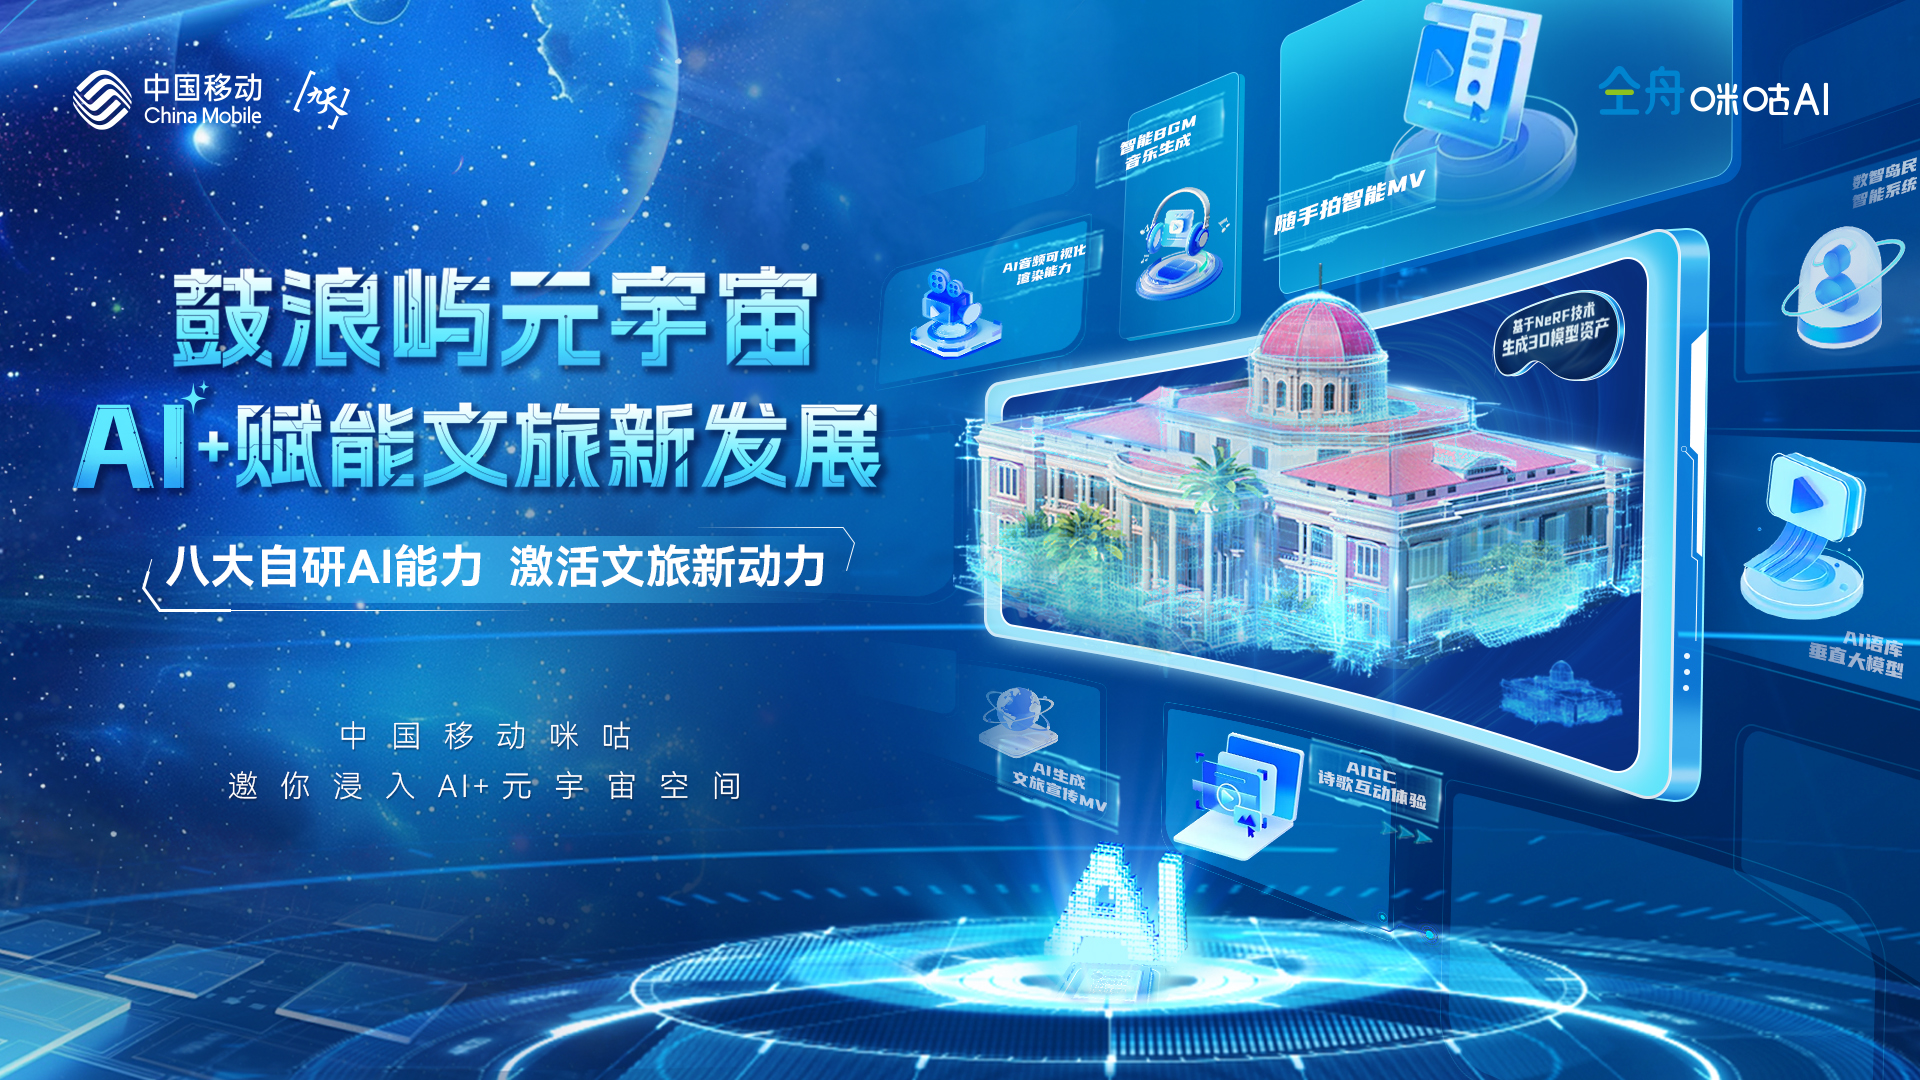 AI+赋能文旅新发展 中国移动携鼓浪屿元宇宙登“鹭”数字中国建设峰会